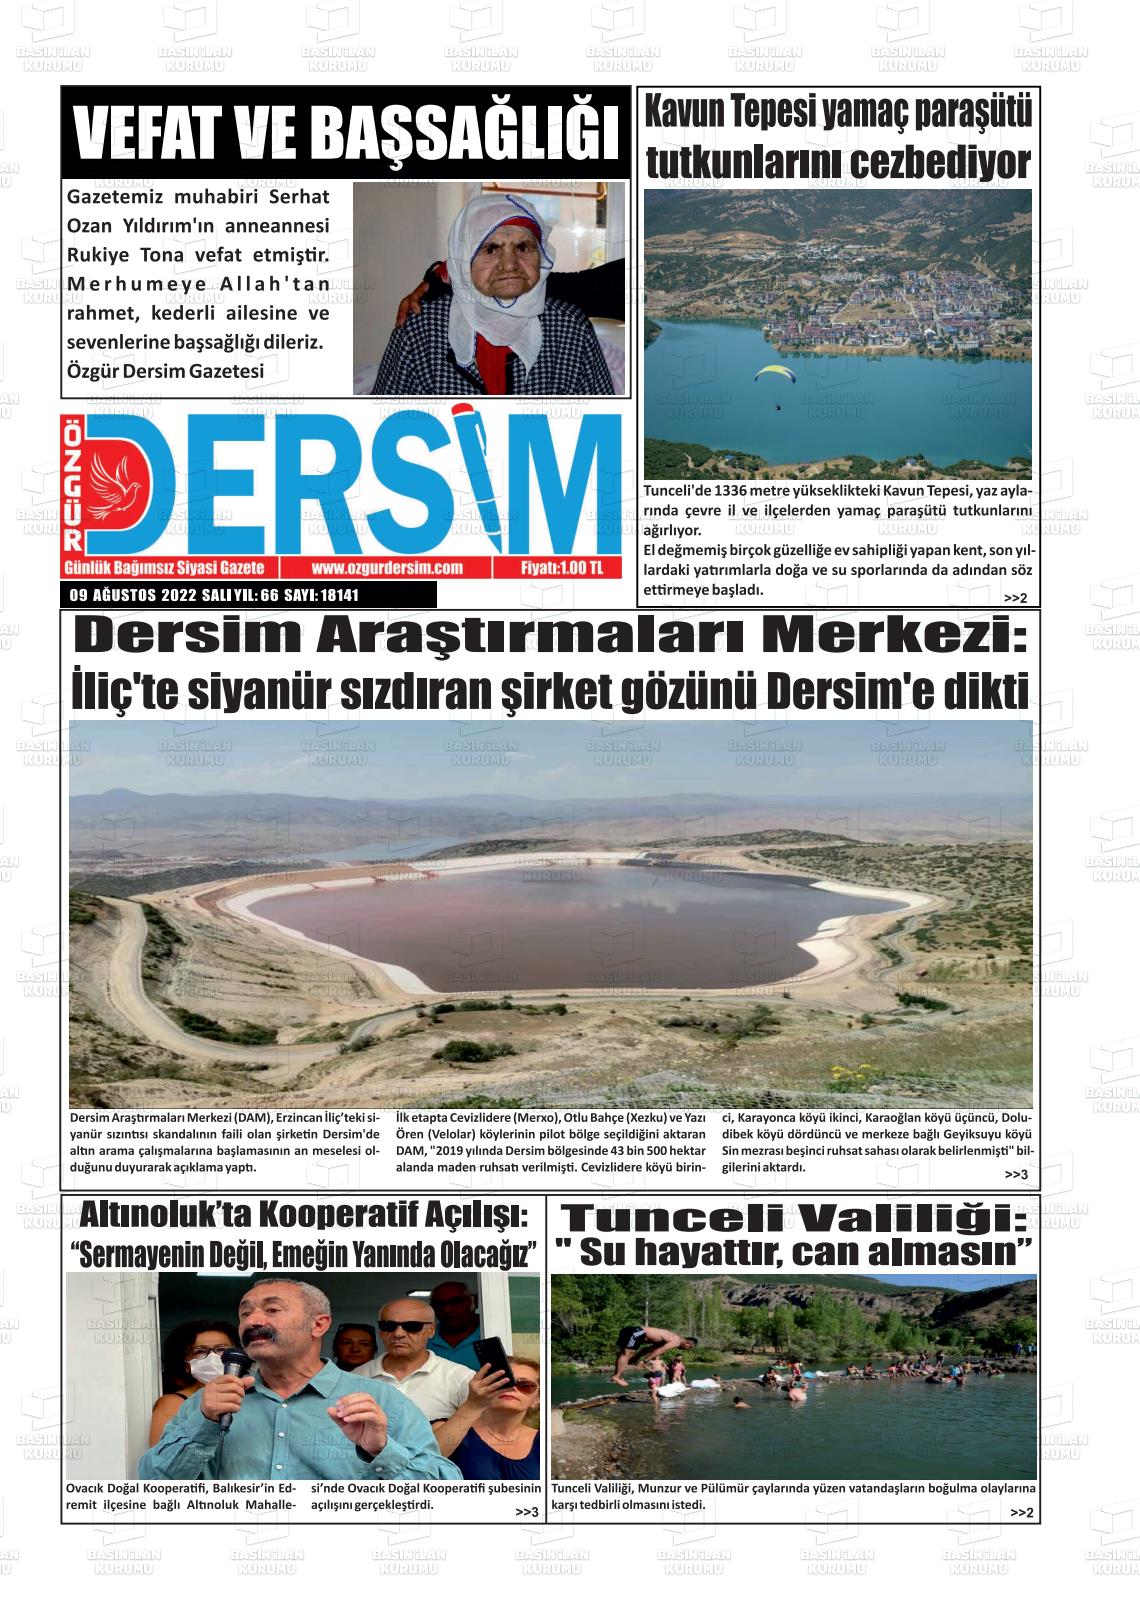 09 Ağustos 2022 Özgür Dersim Gazete Manşeti